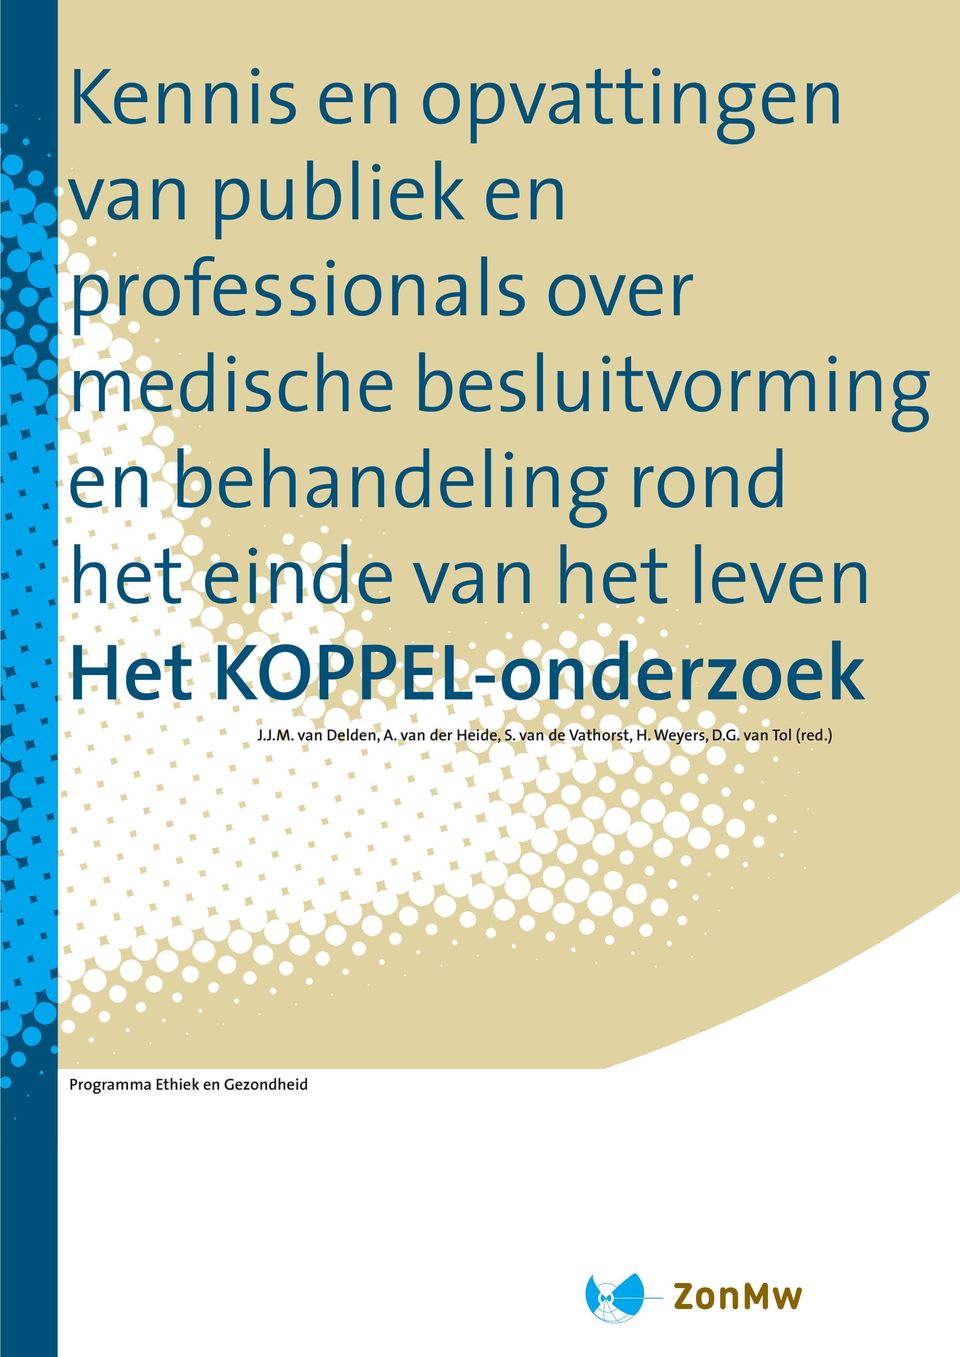 KOPPEL-onderzoek J.J.M. van Delden, A. van der Heide, S.